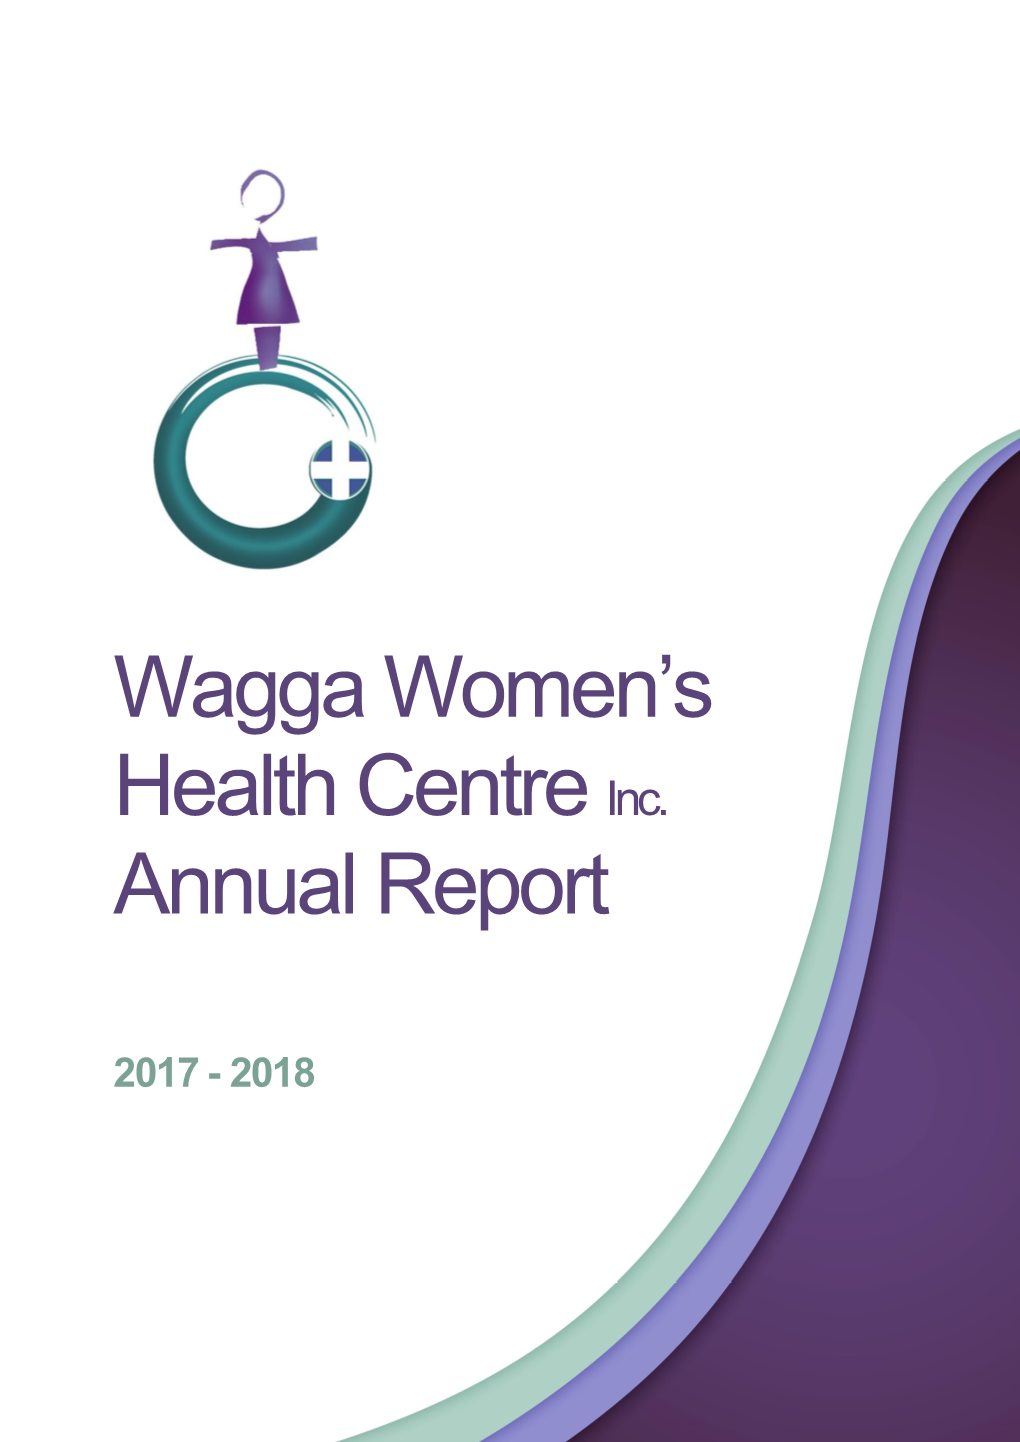 Wagga Women's Health Centre Inc. Annual Report